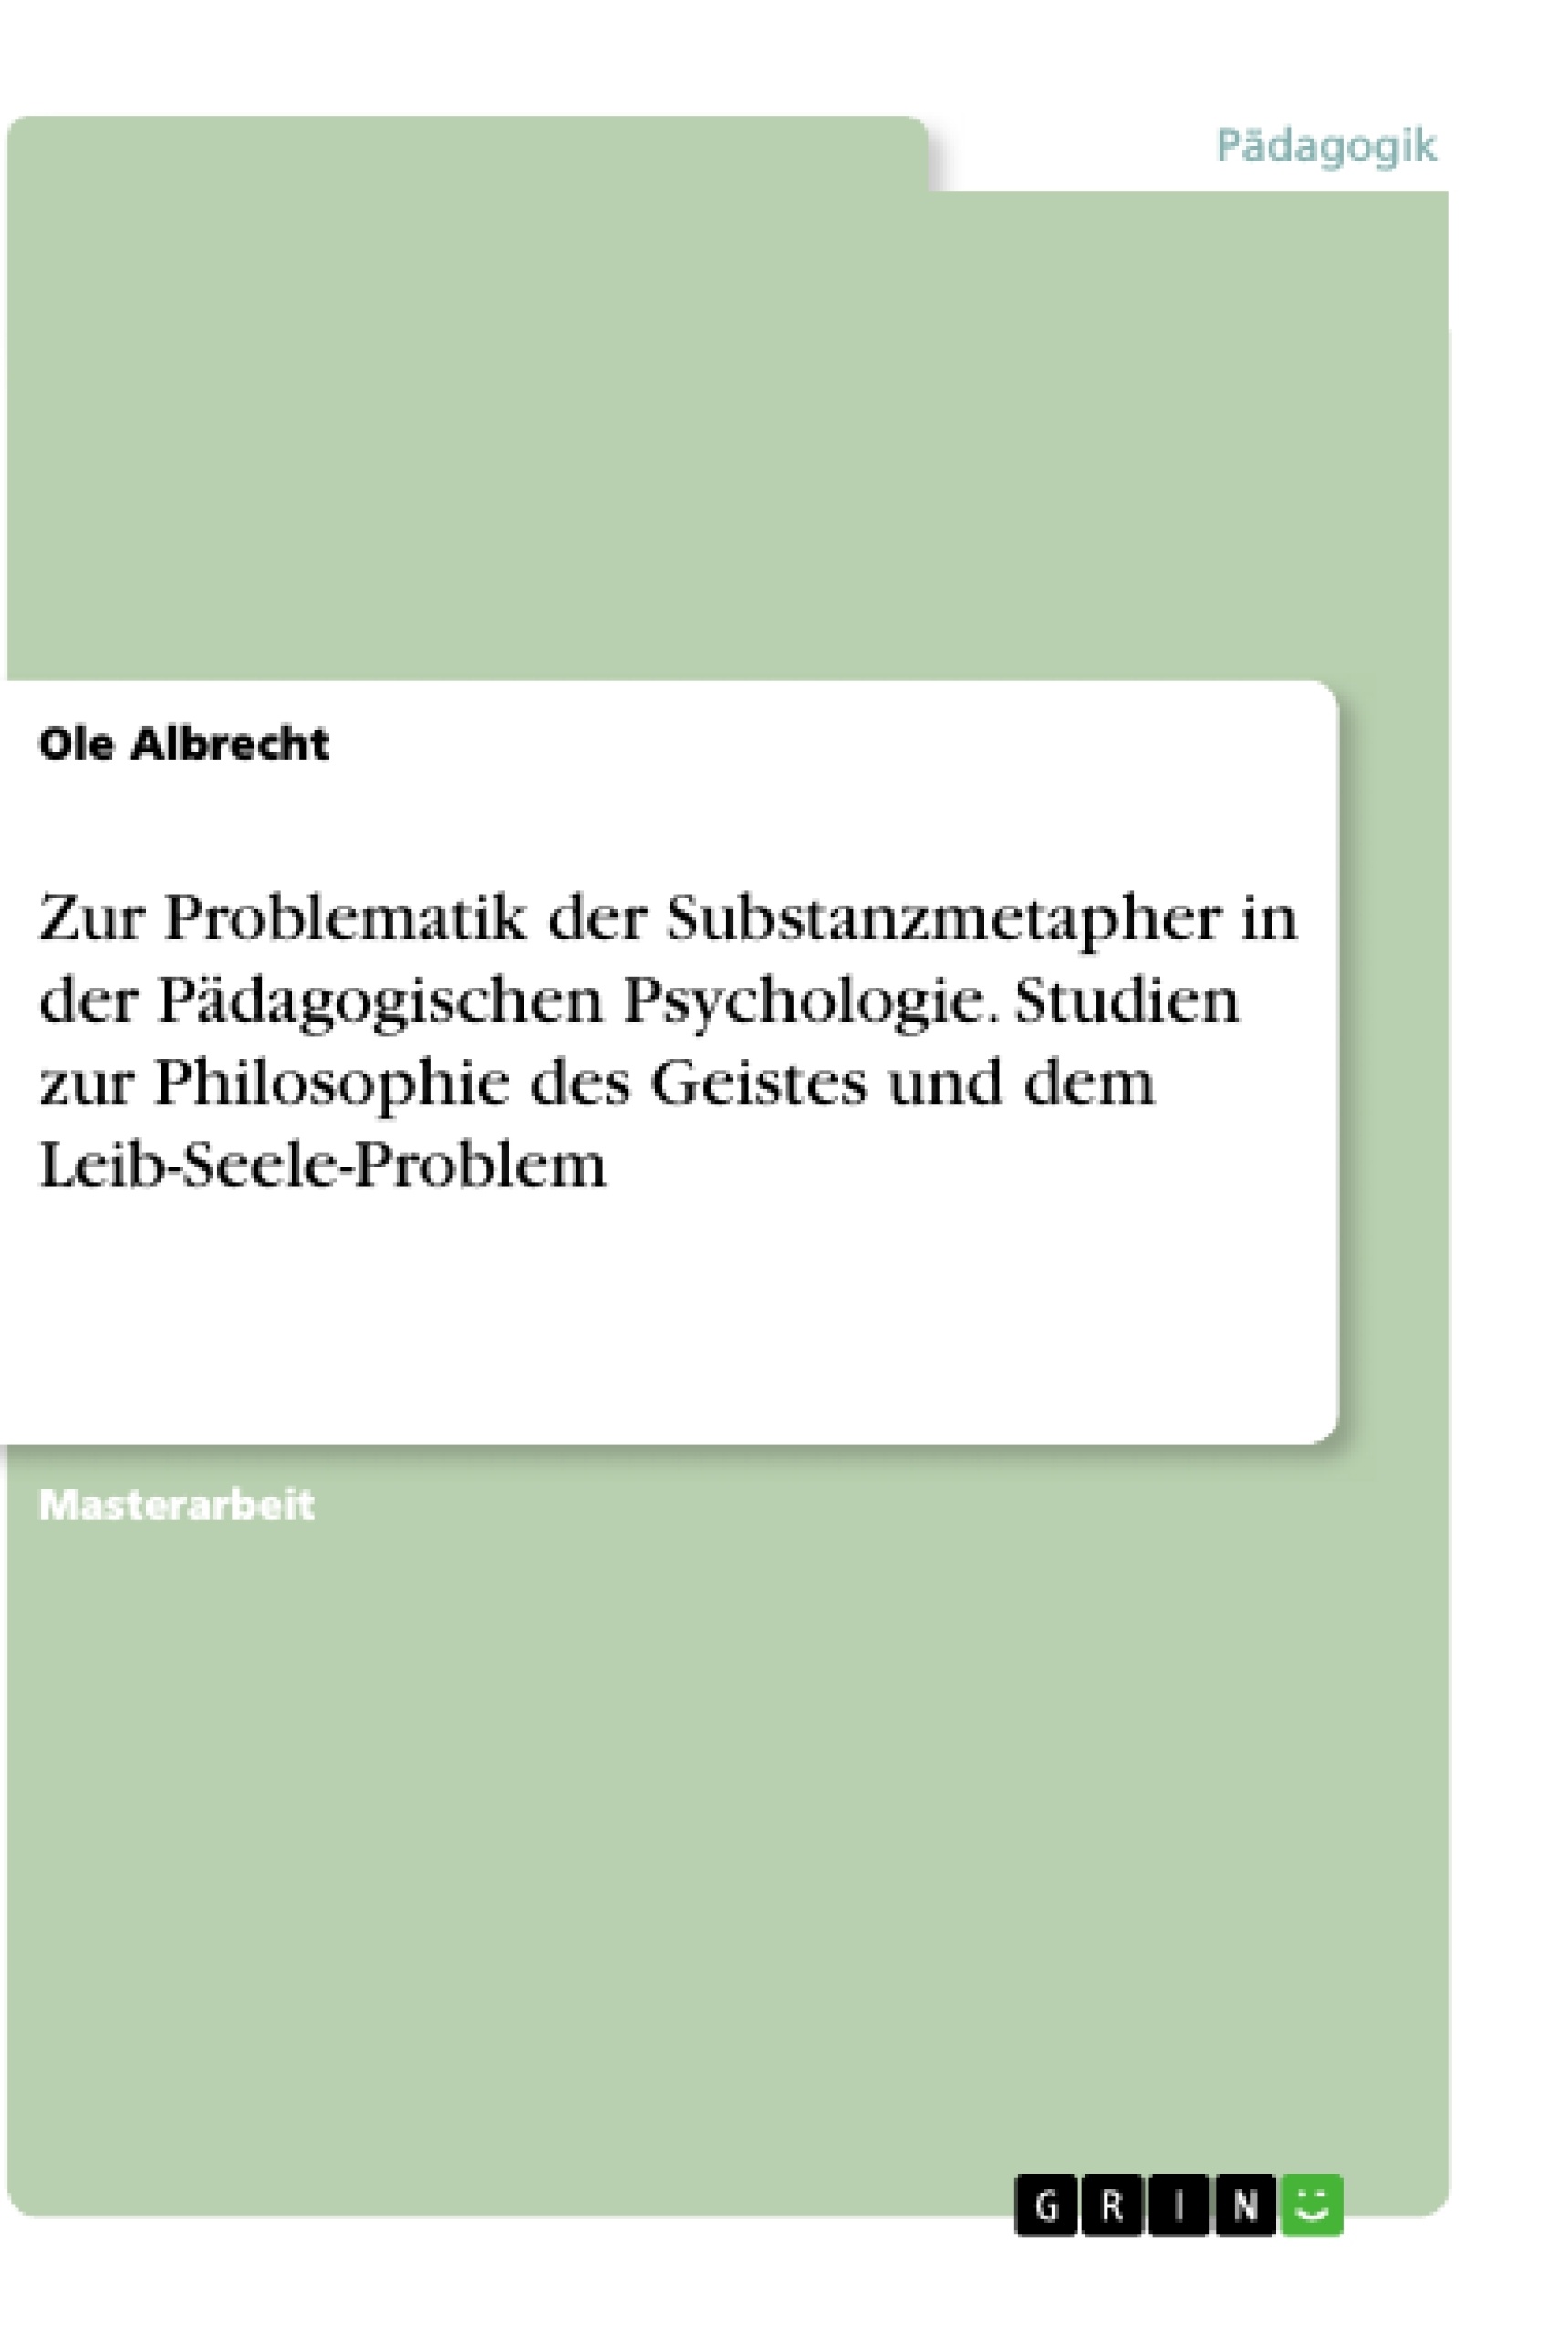 Title: Zur Problematik der Substanzmetapher in der Pädagogischen Psychologie. Studien zur Philosophie des Geistes und dem Leib-Seele-Problem